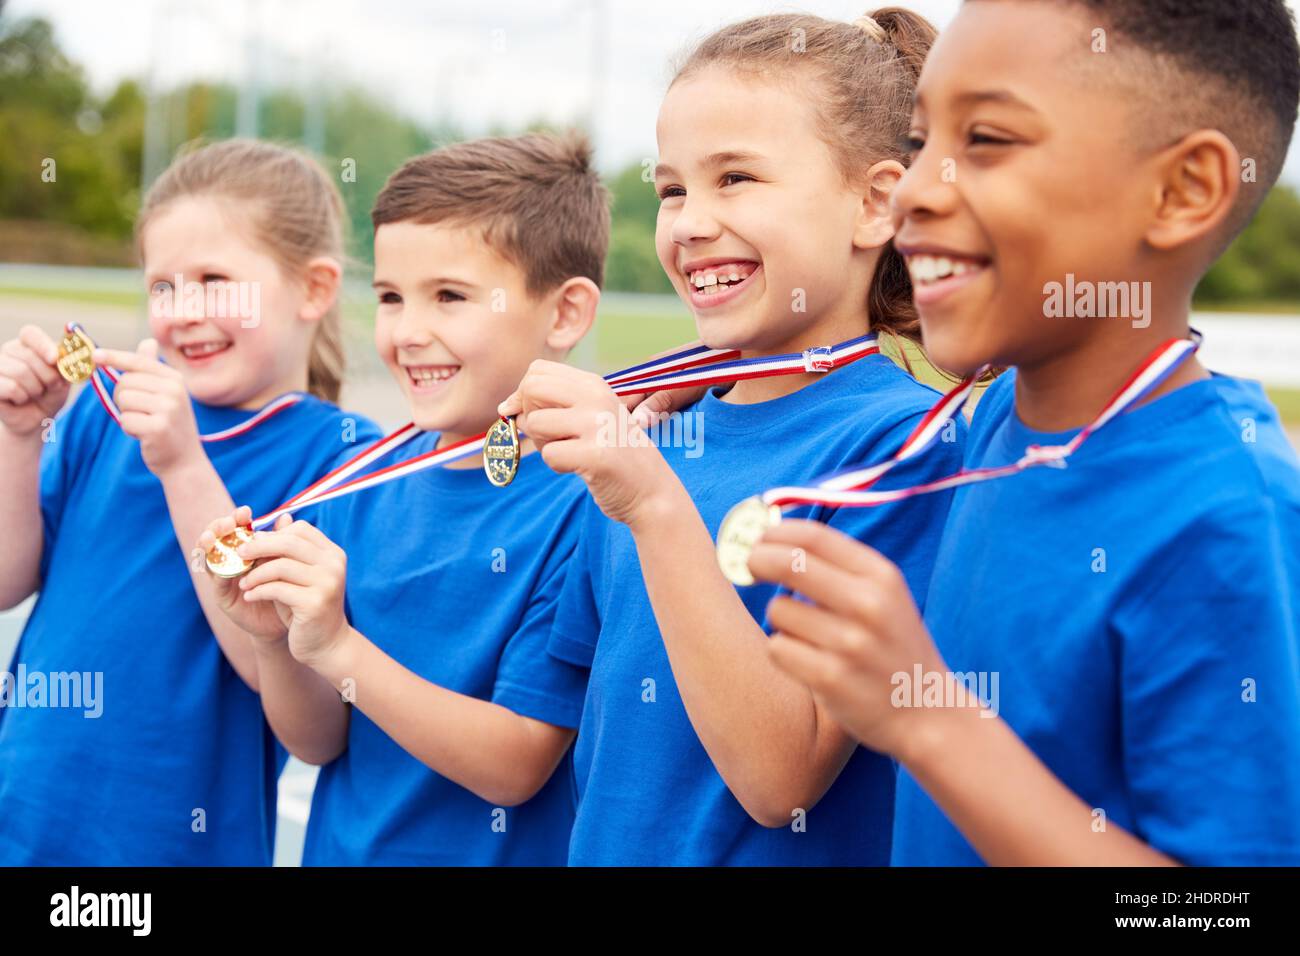 winners, pride, medal, winner, prides.proud, medals Stock Photo